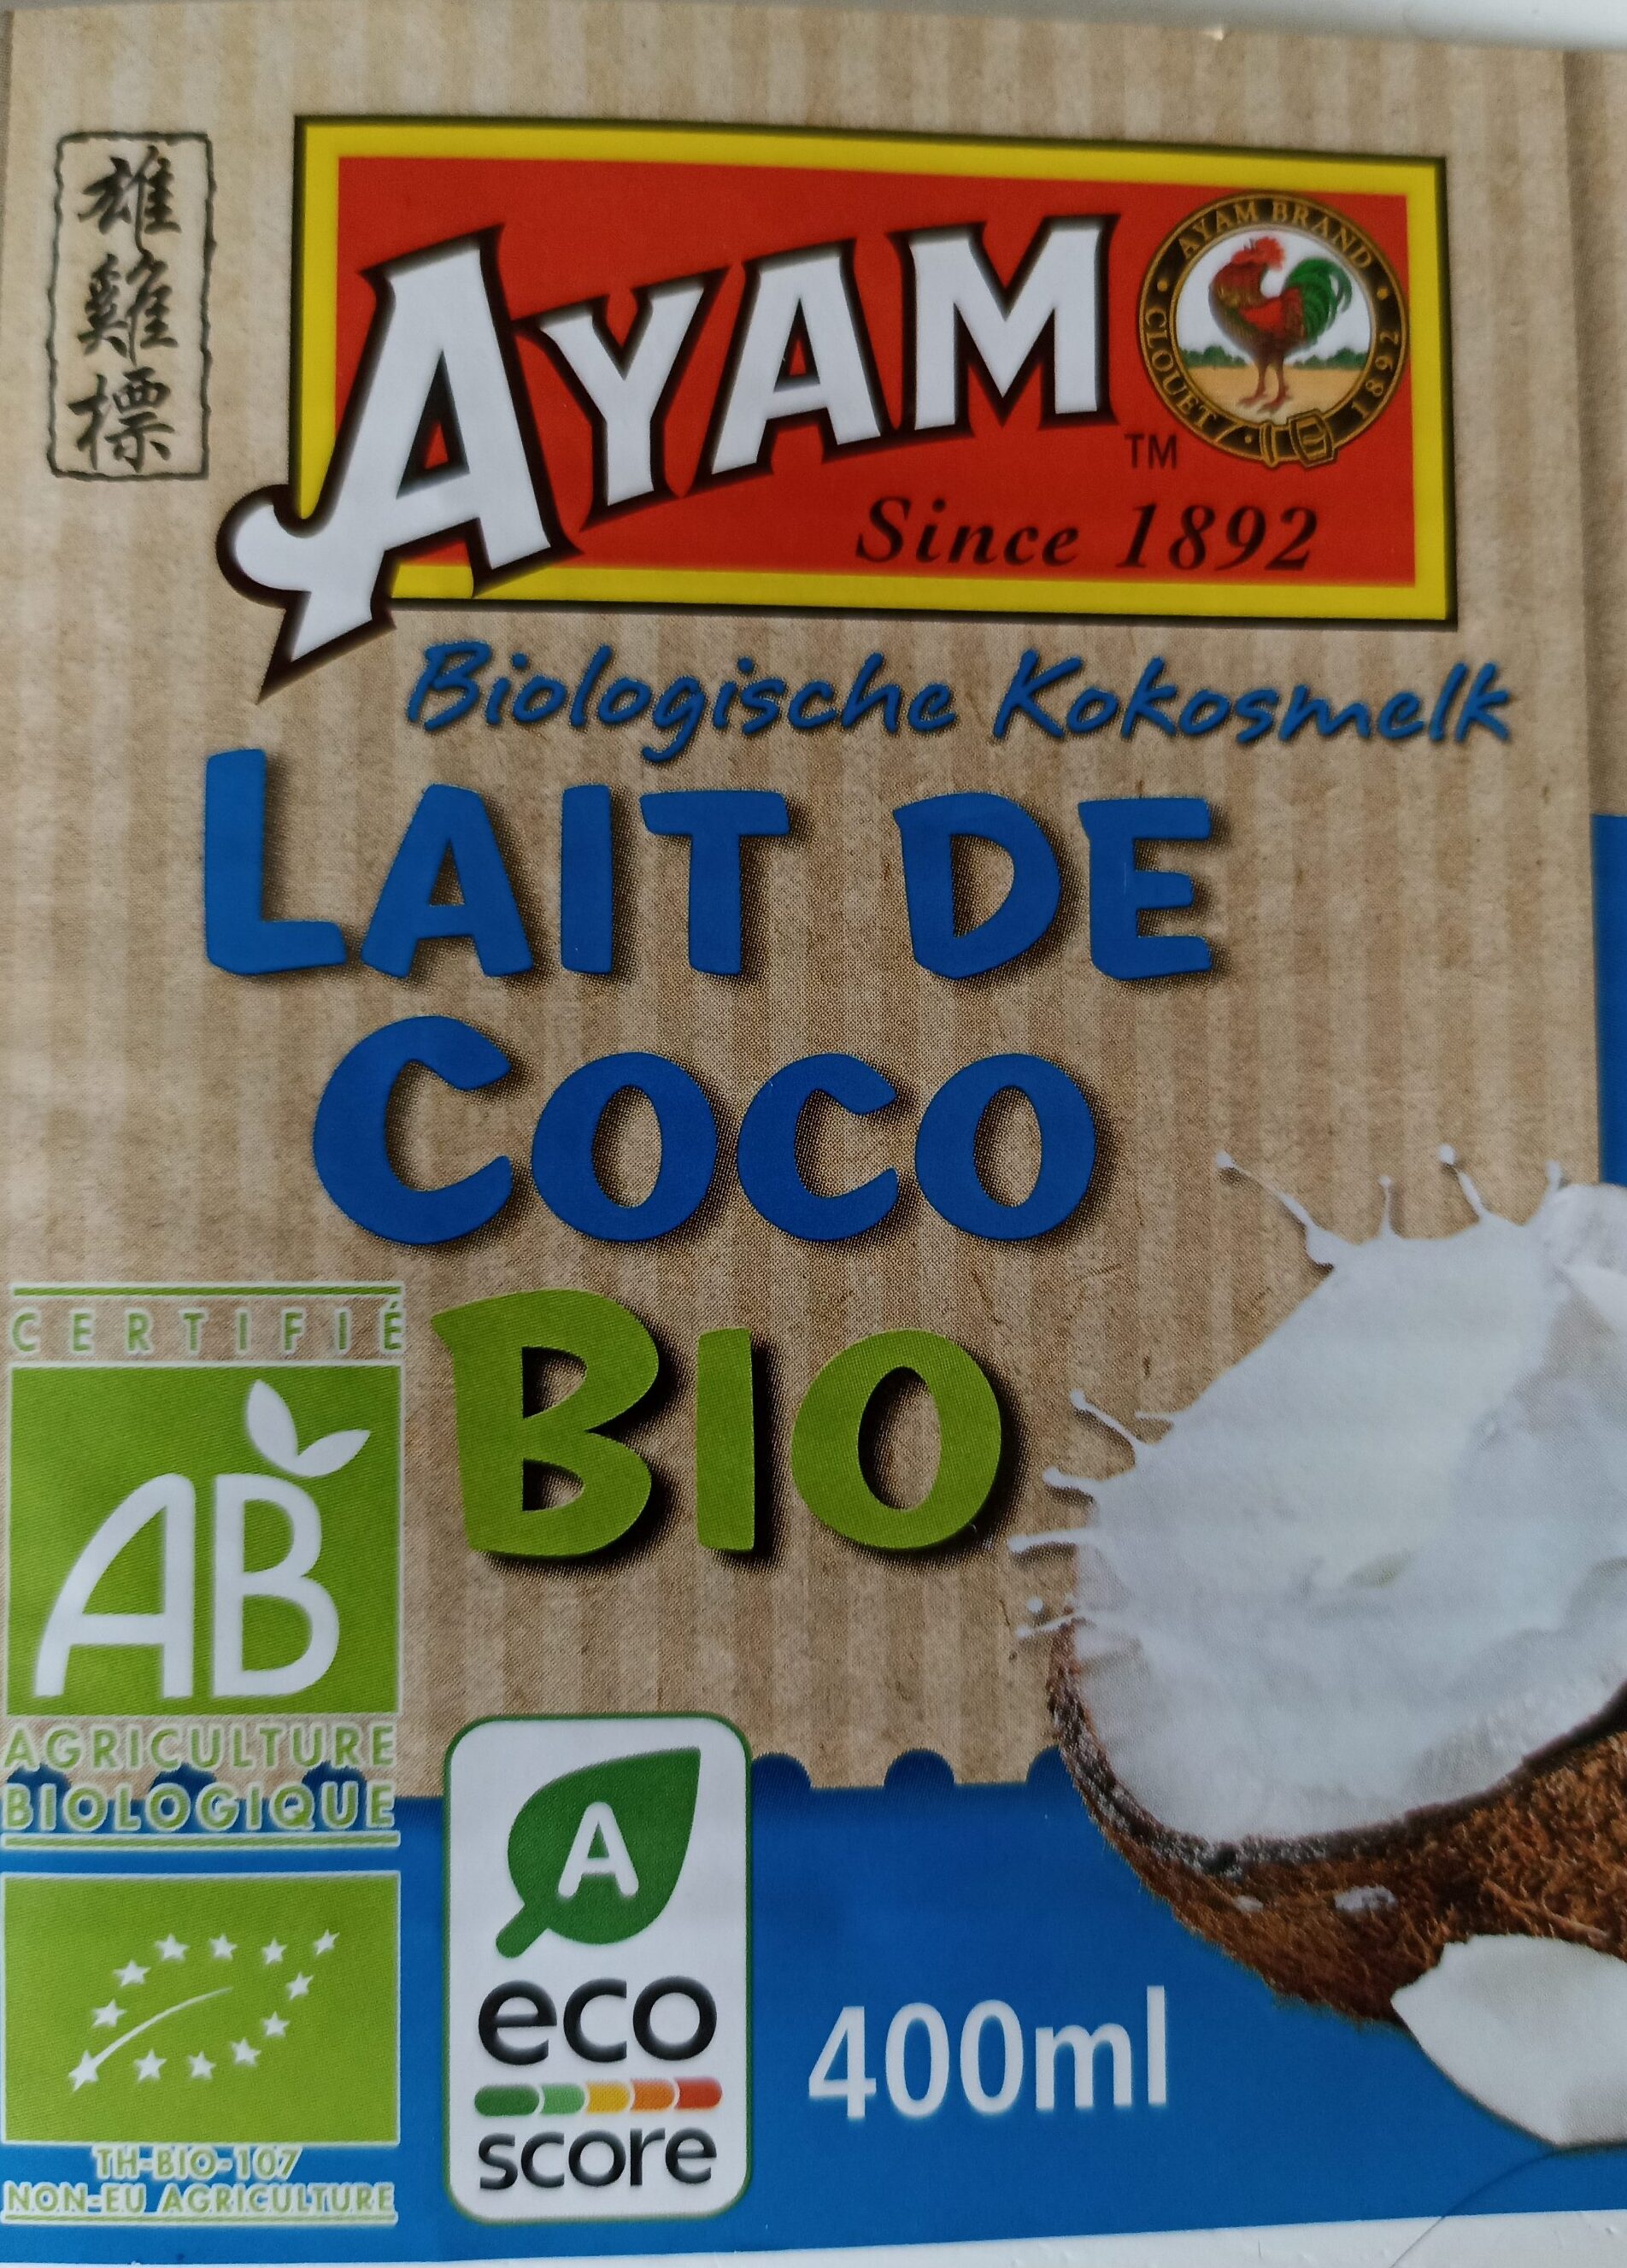 Lait de coco bio - Product - fr